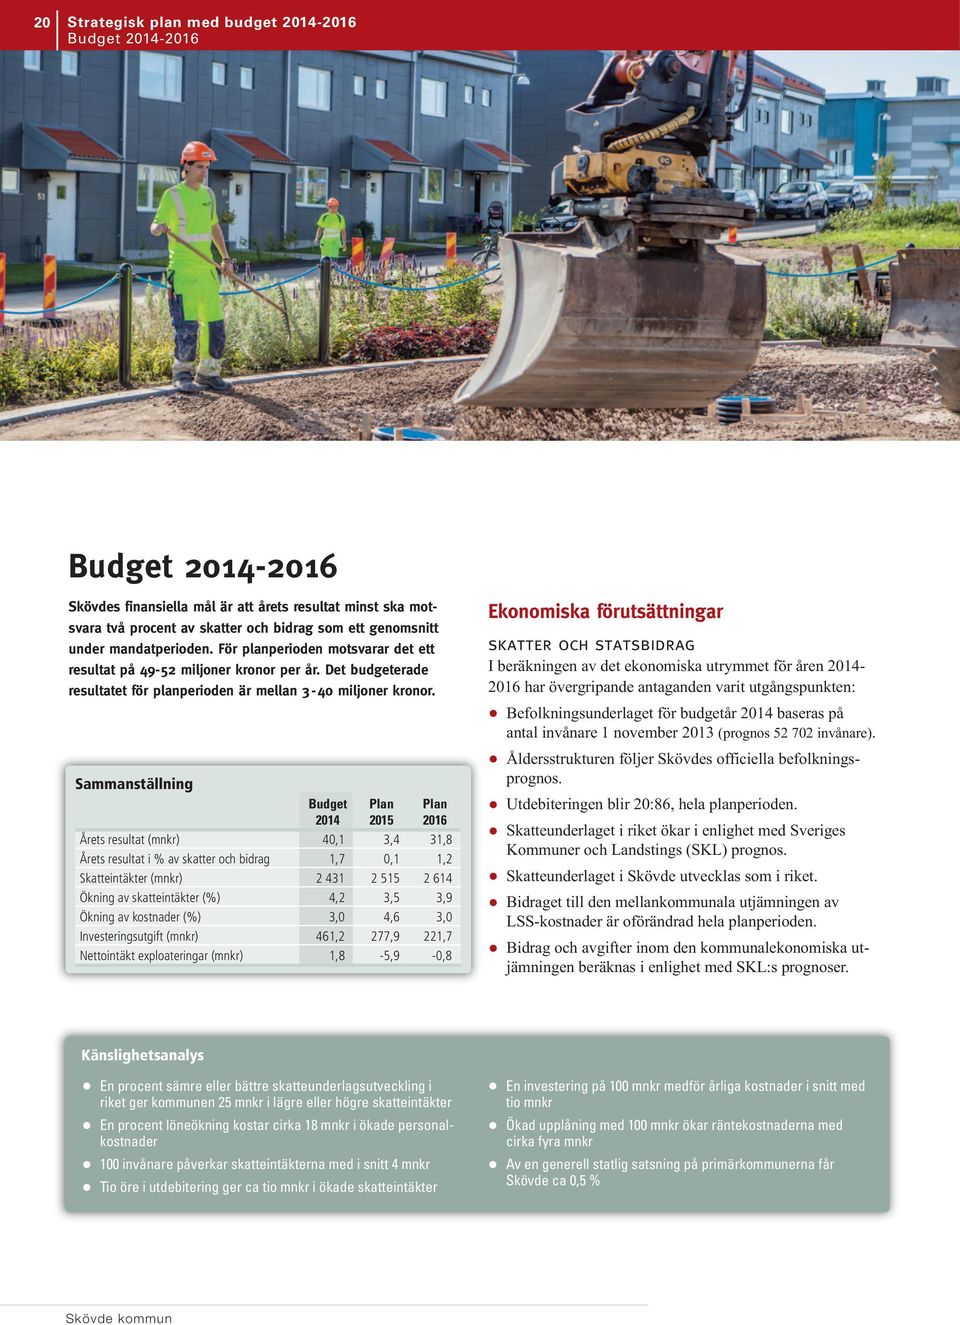 Sammanställning Budget Plan Plan 2014 2015 2016 Årets resultat (mnkr) 40,1 3,4 31,8 Årets resultat i % av skatter och bidrag 1,7 0,1 1,2 Skatteintäkter (mnkr) 2 431 2 515 2 614 Ökning av